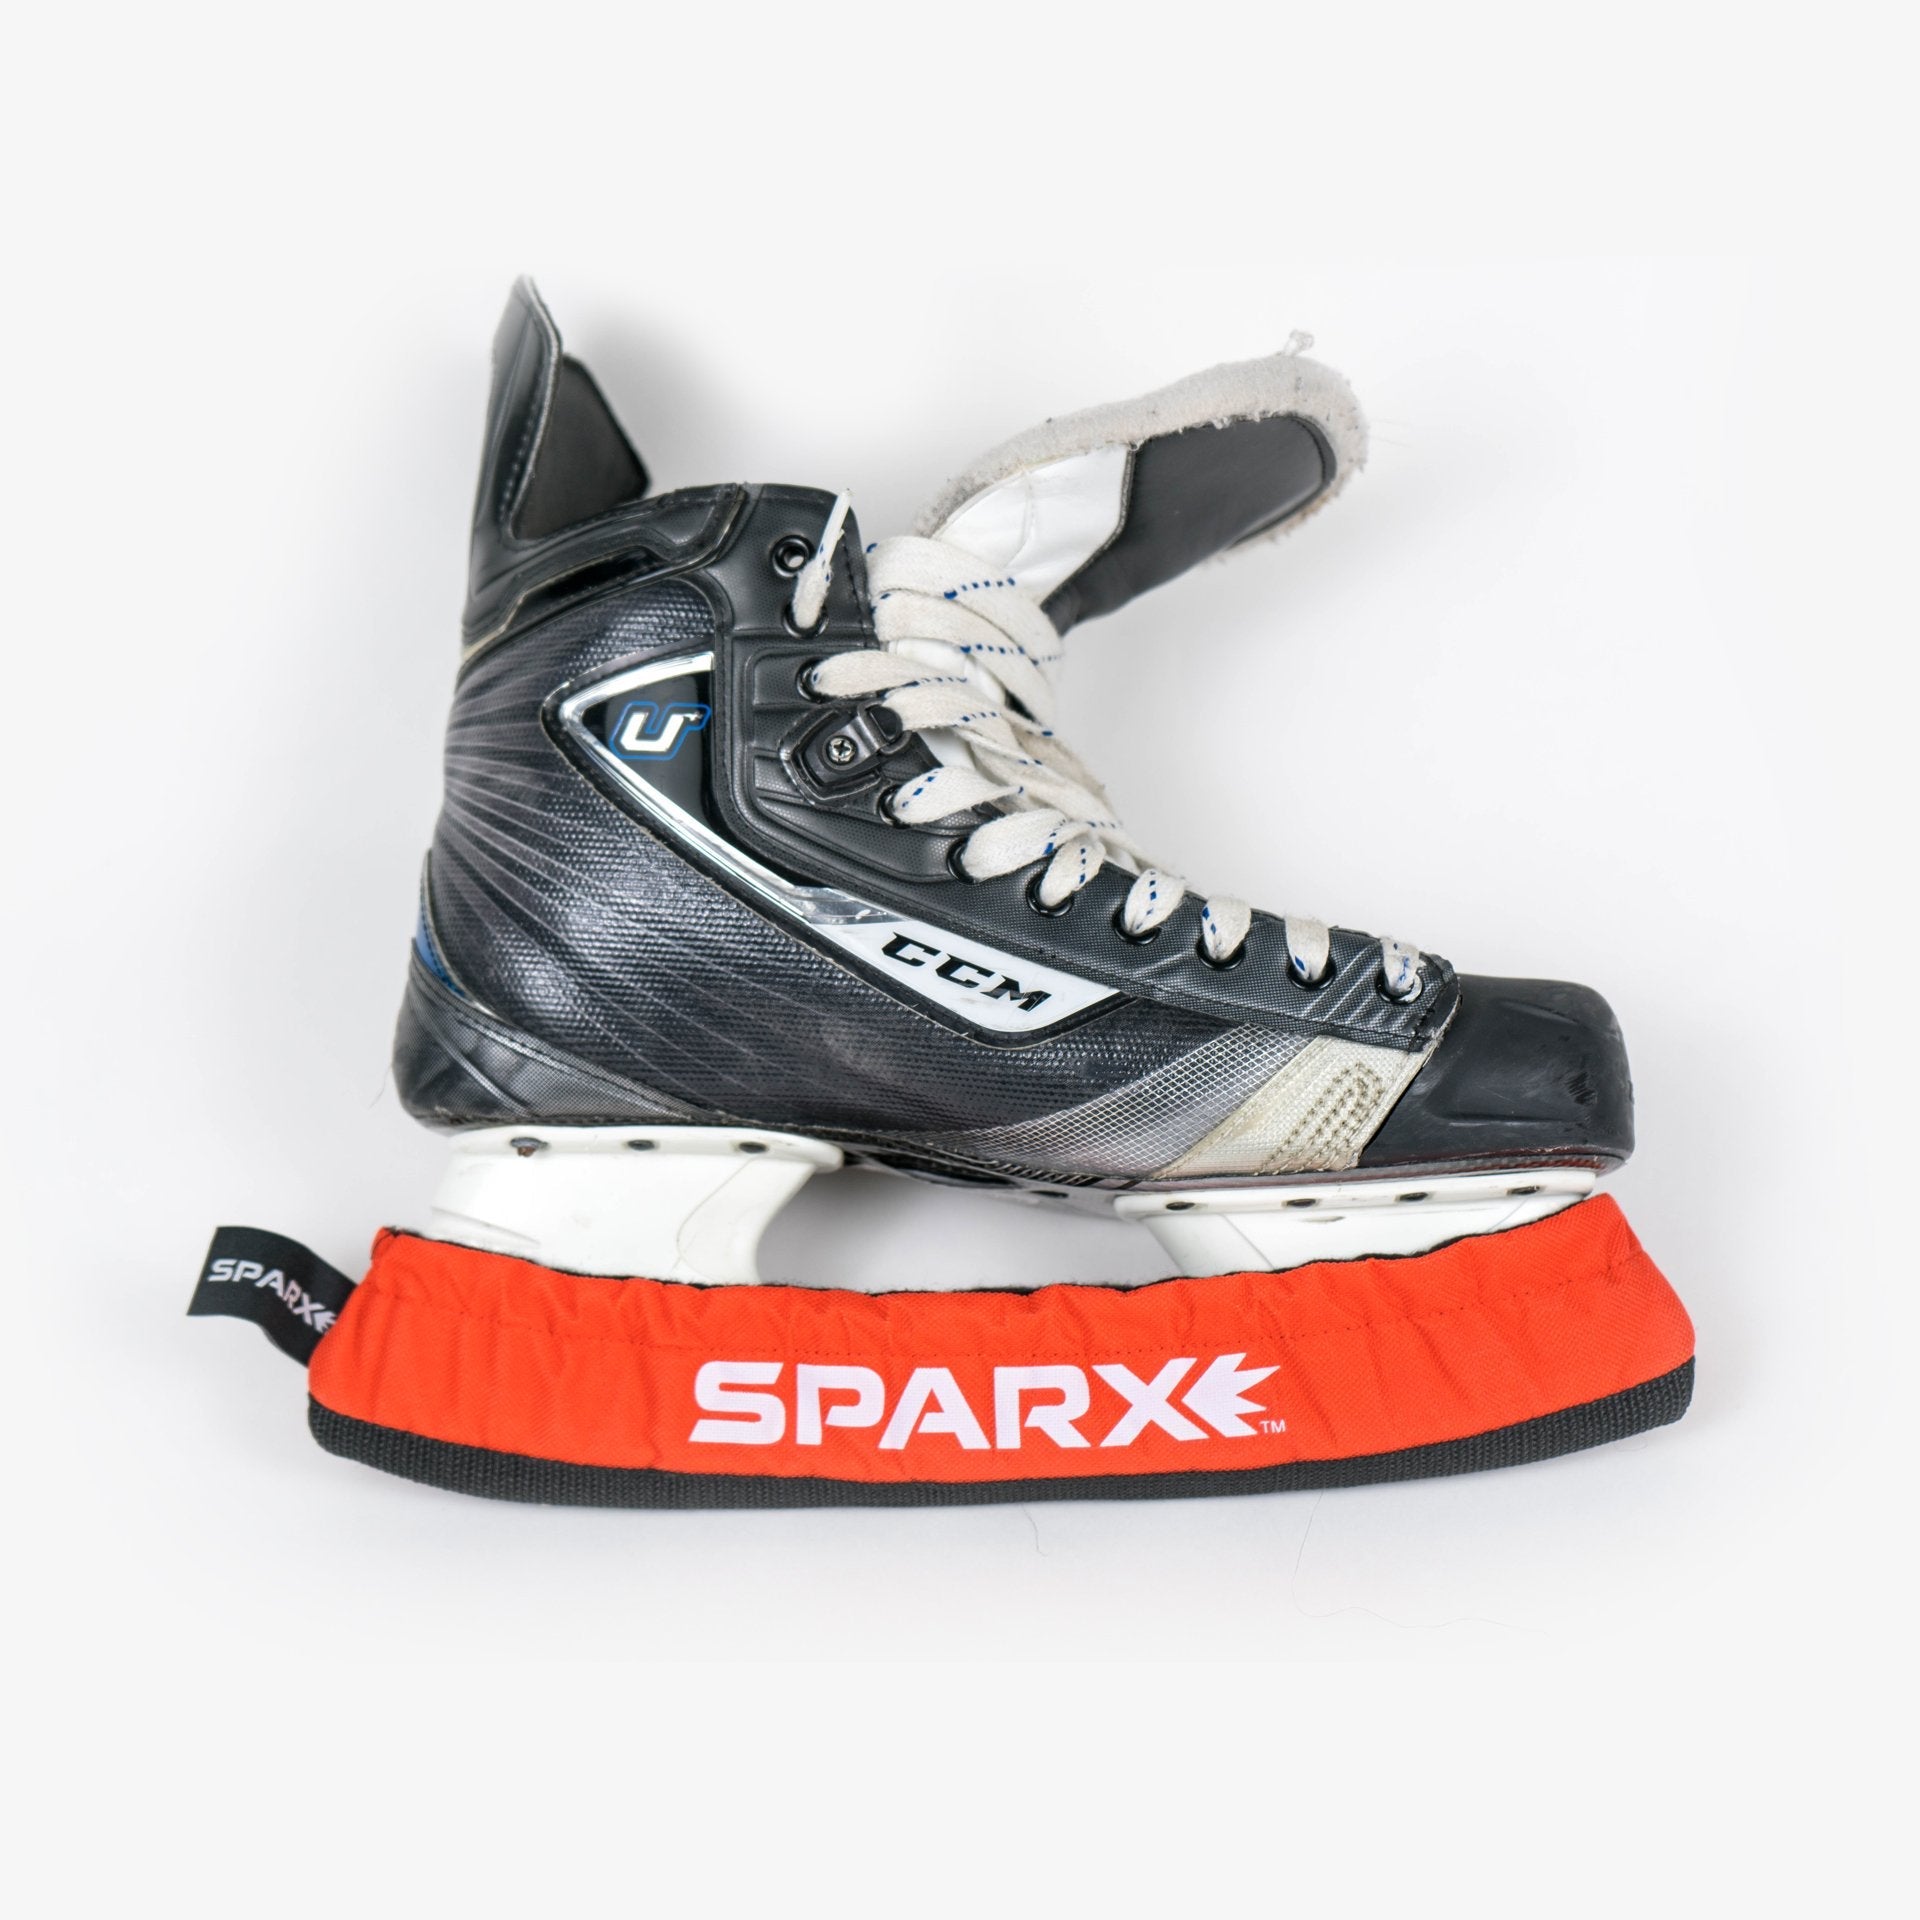 Skate Soaker